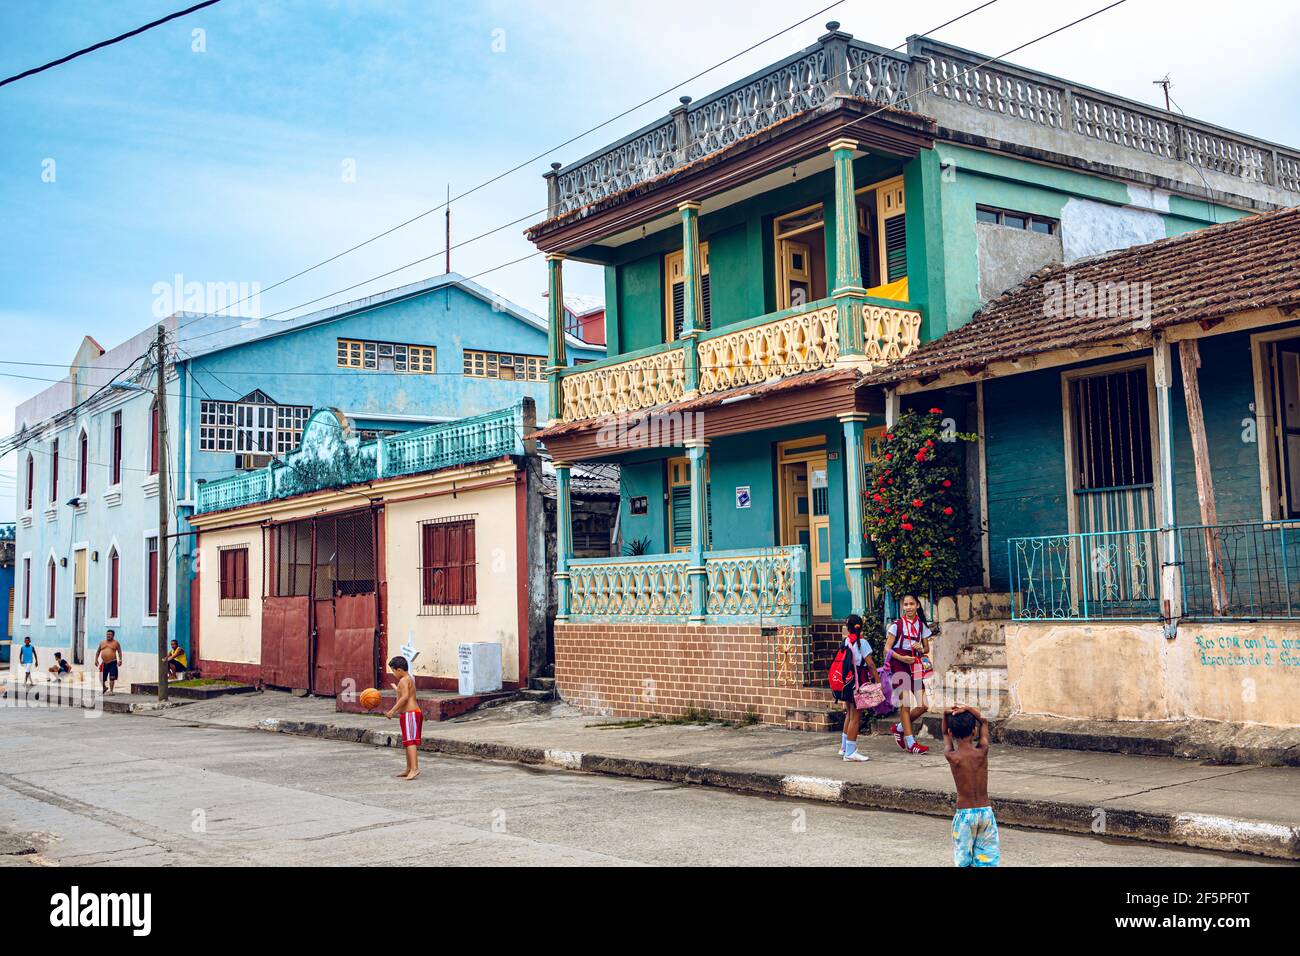 Baracoa, Cuba - 25 octobre 2019 : les enfants cubains jouent dans la rue avec des maisons traditionnelles colorées - sensation de l'esprit du vrai Cuba Banque D'Images